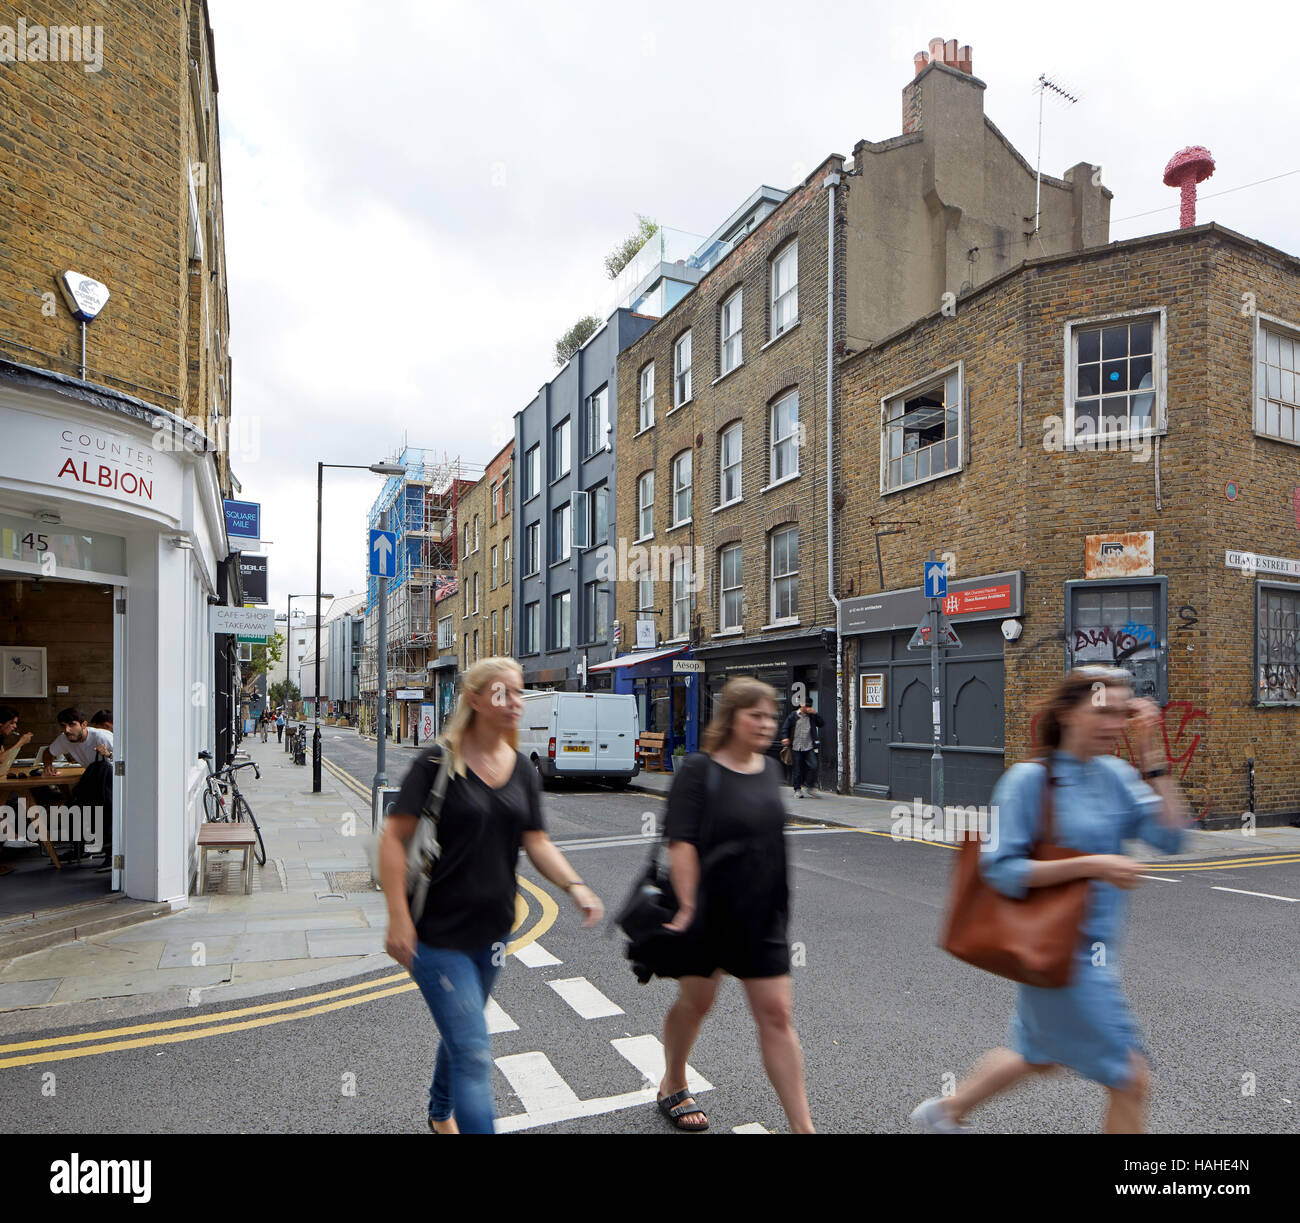 Straßenszene in Brick Lane East London. Architektonische Lager, verschiedene, Vereinigtes Königreich. Architekt: n/a, 2016. Stockfoto